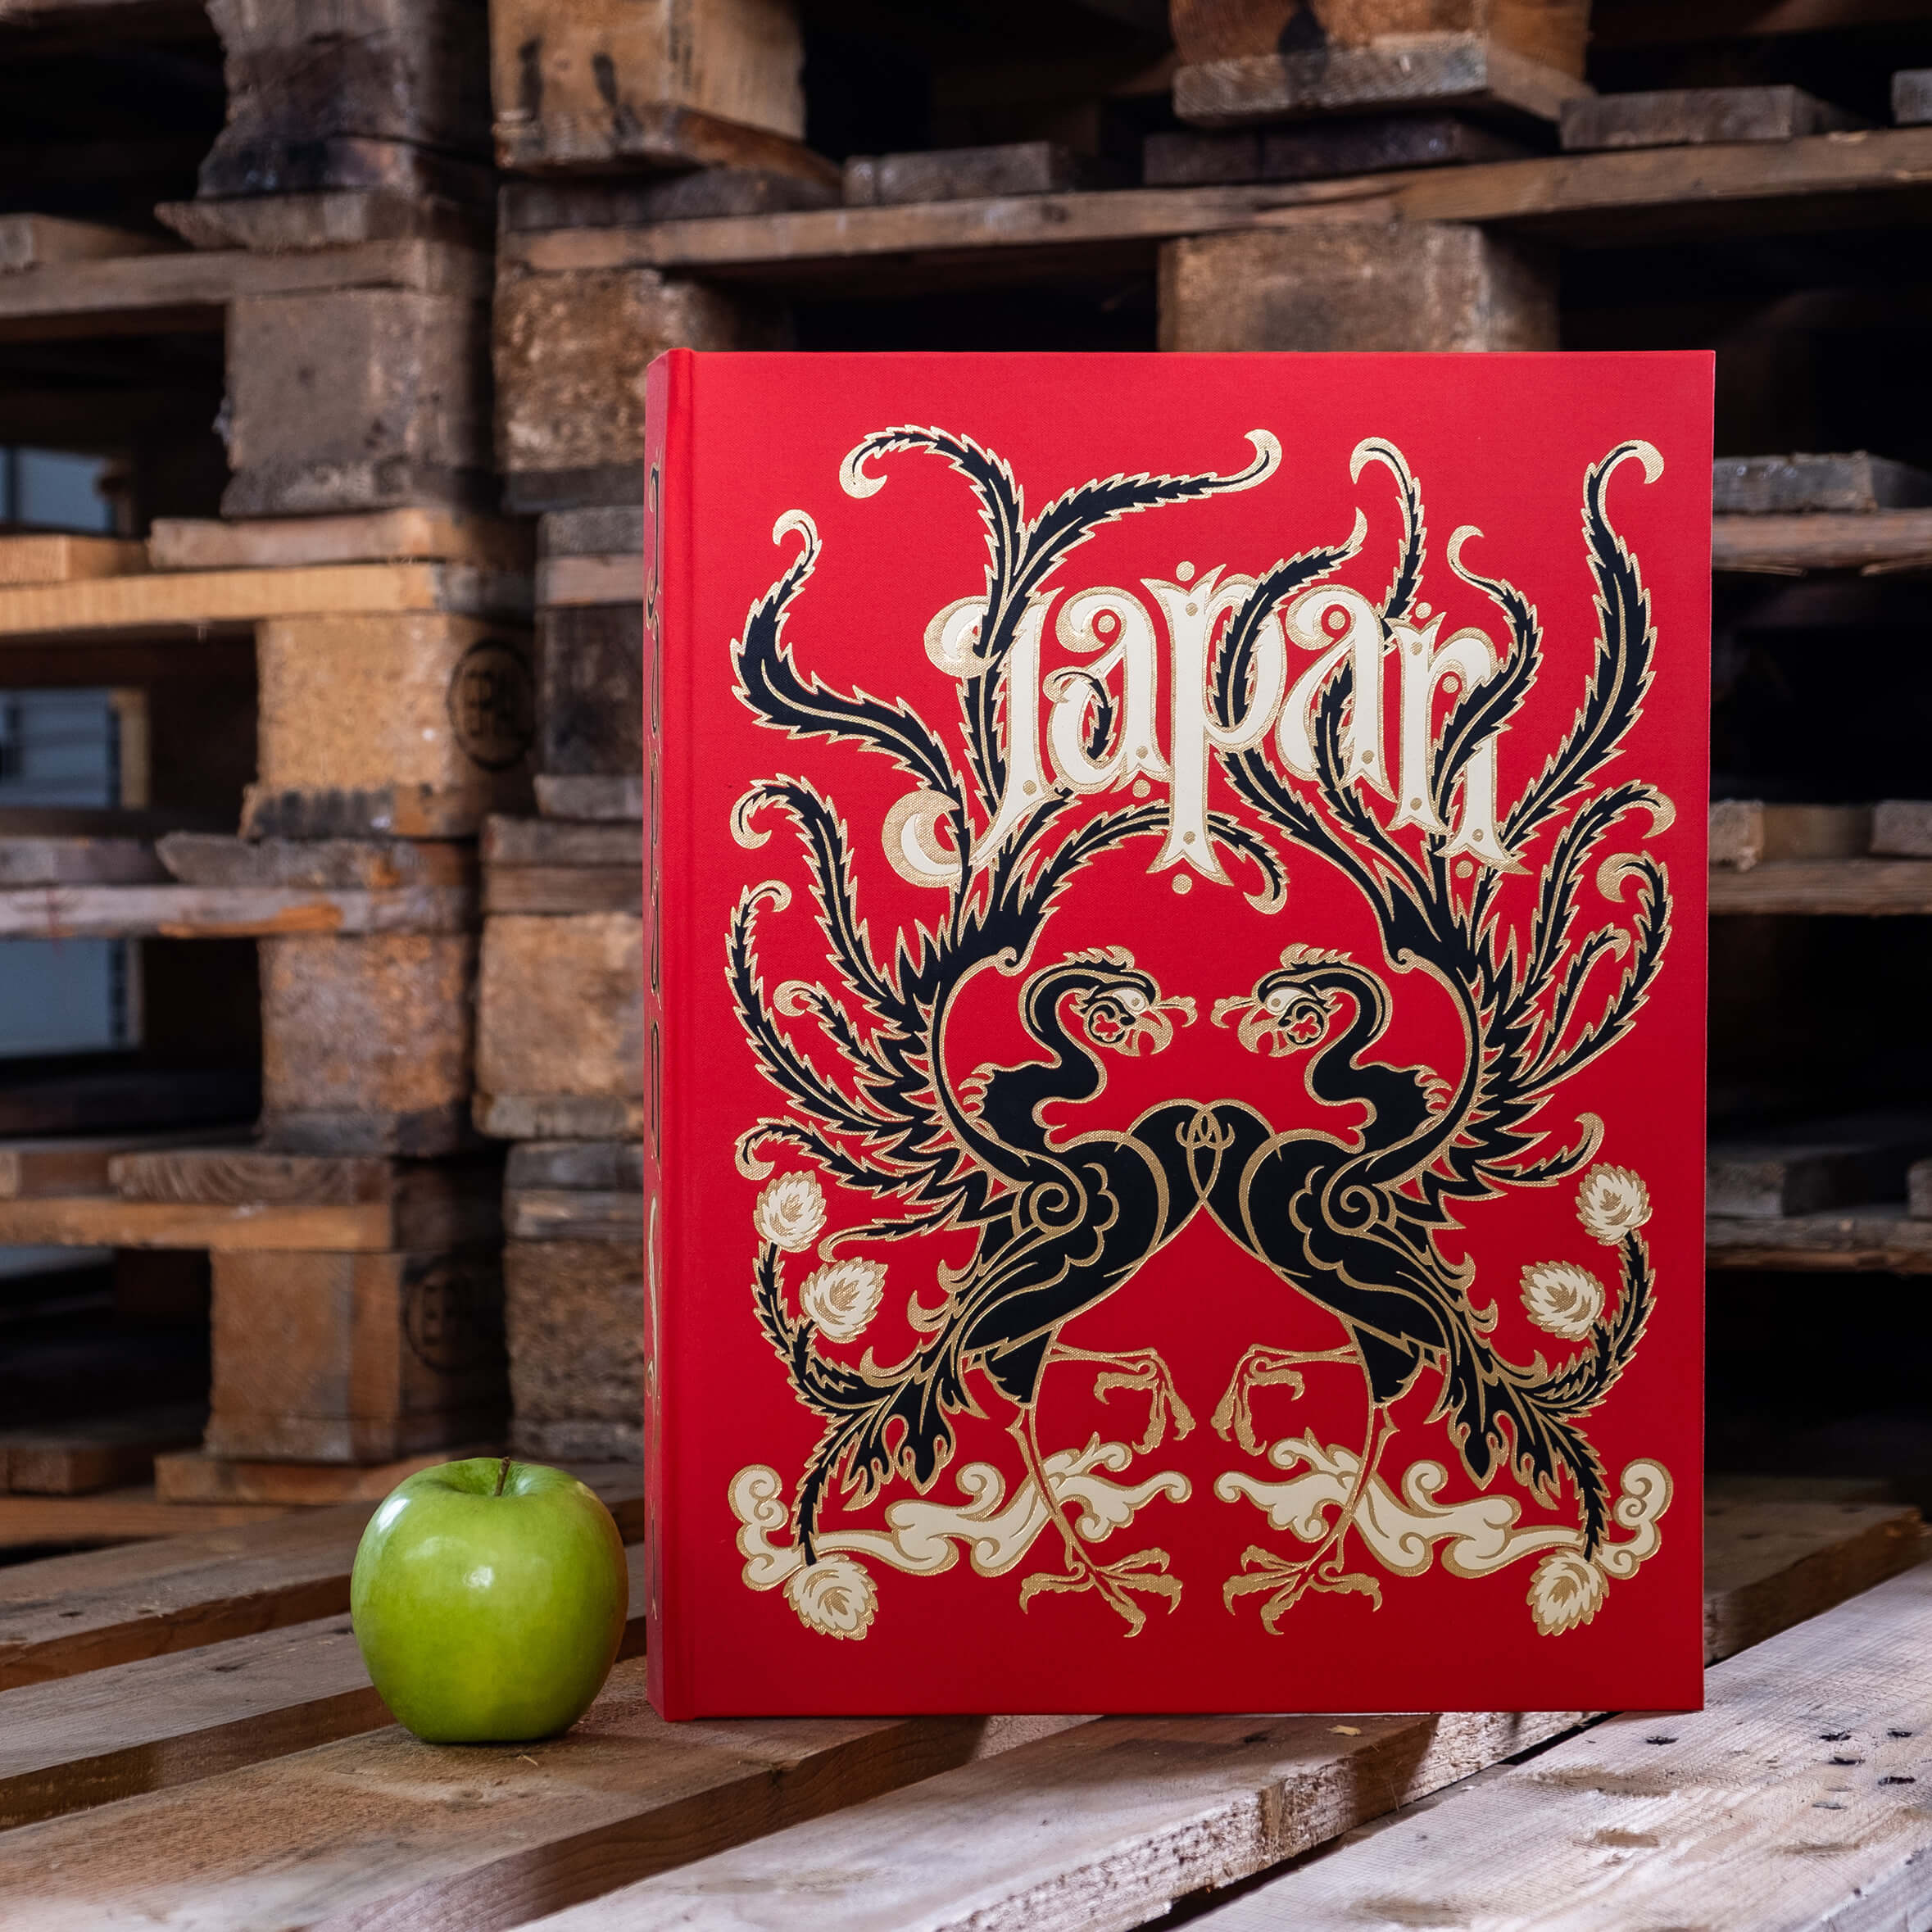 Beispielbuch Japan Stil in rot mit Schriftzug Japan mit grünem Apfel daneben auf Paletten stehend